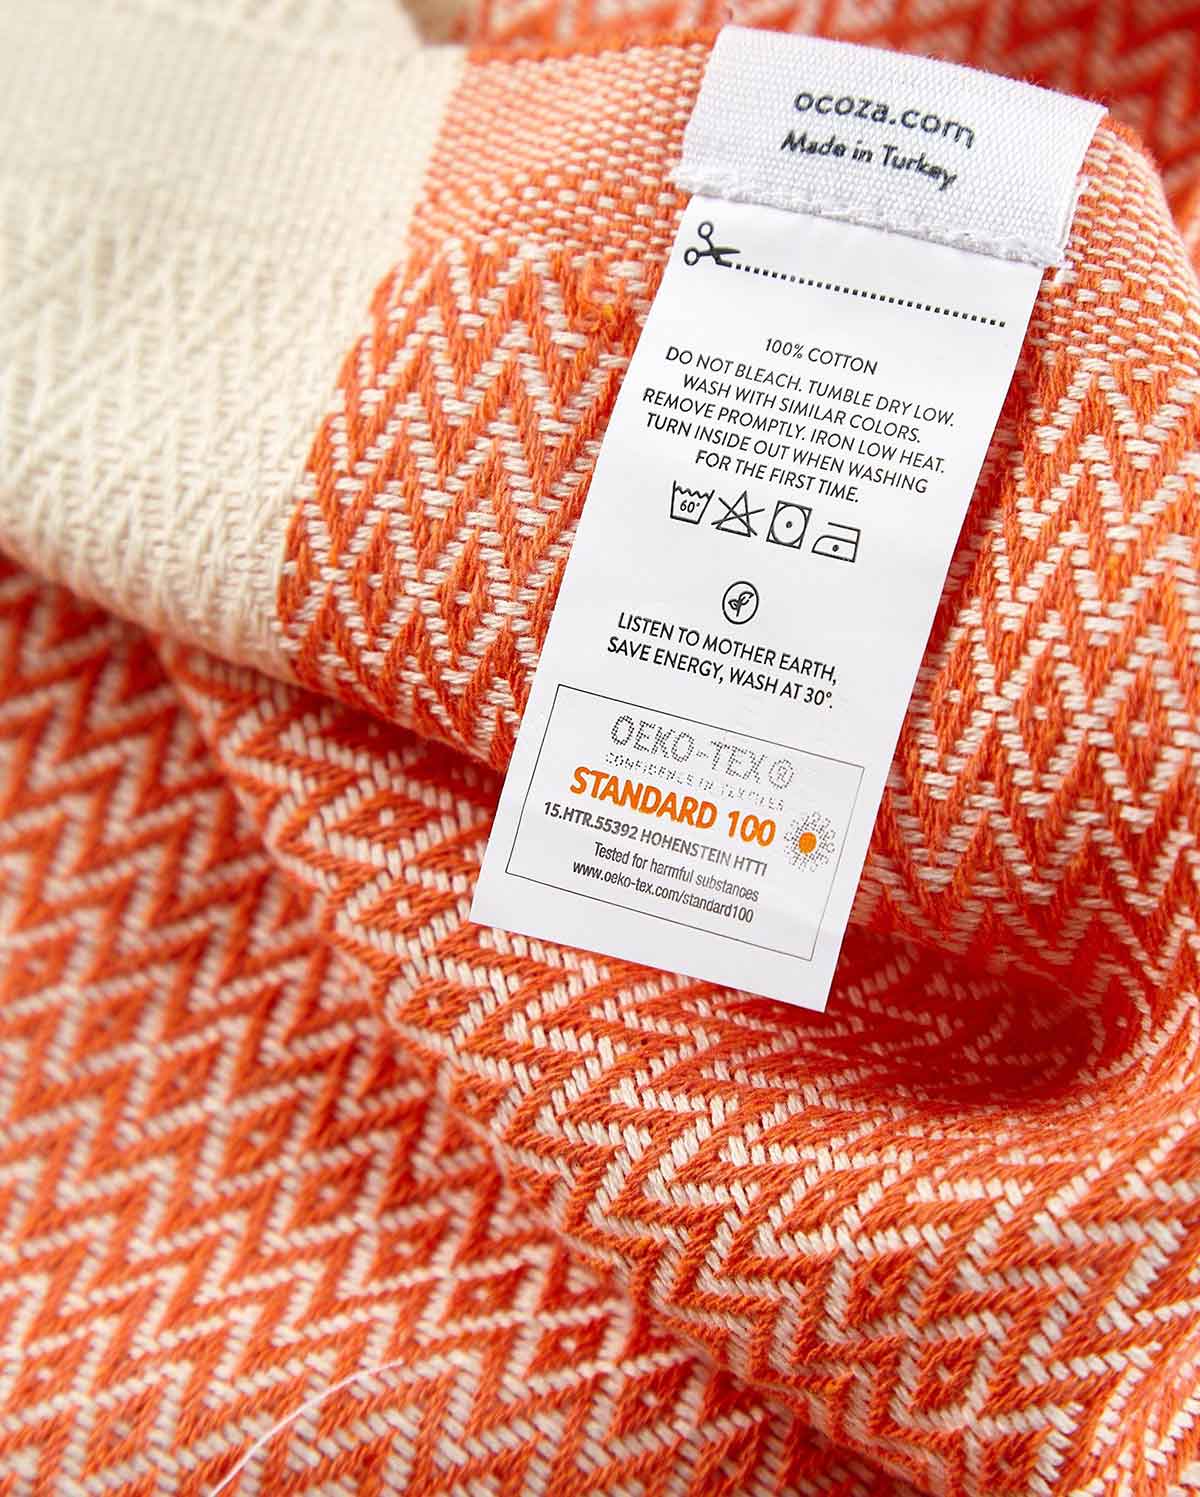 Cotton Peshtemal Towel-Orange & White